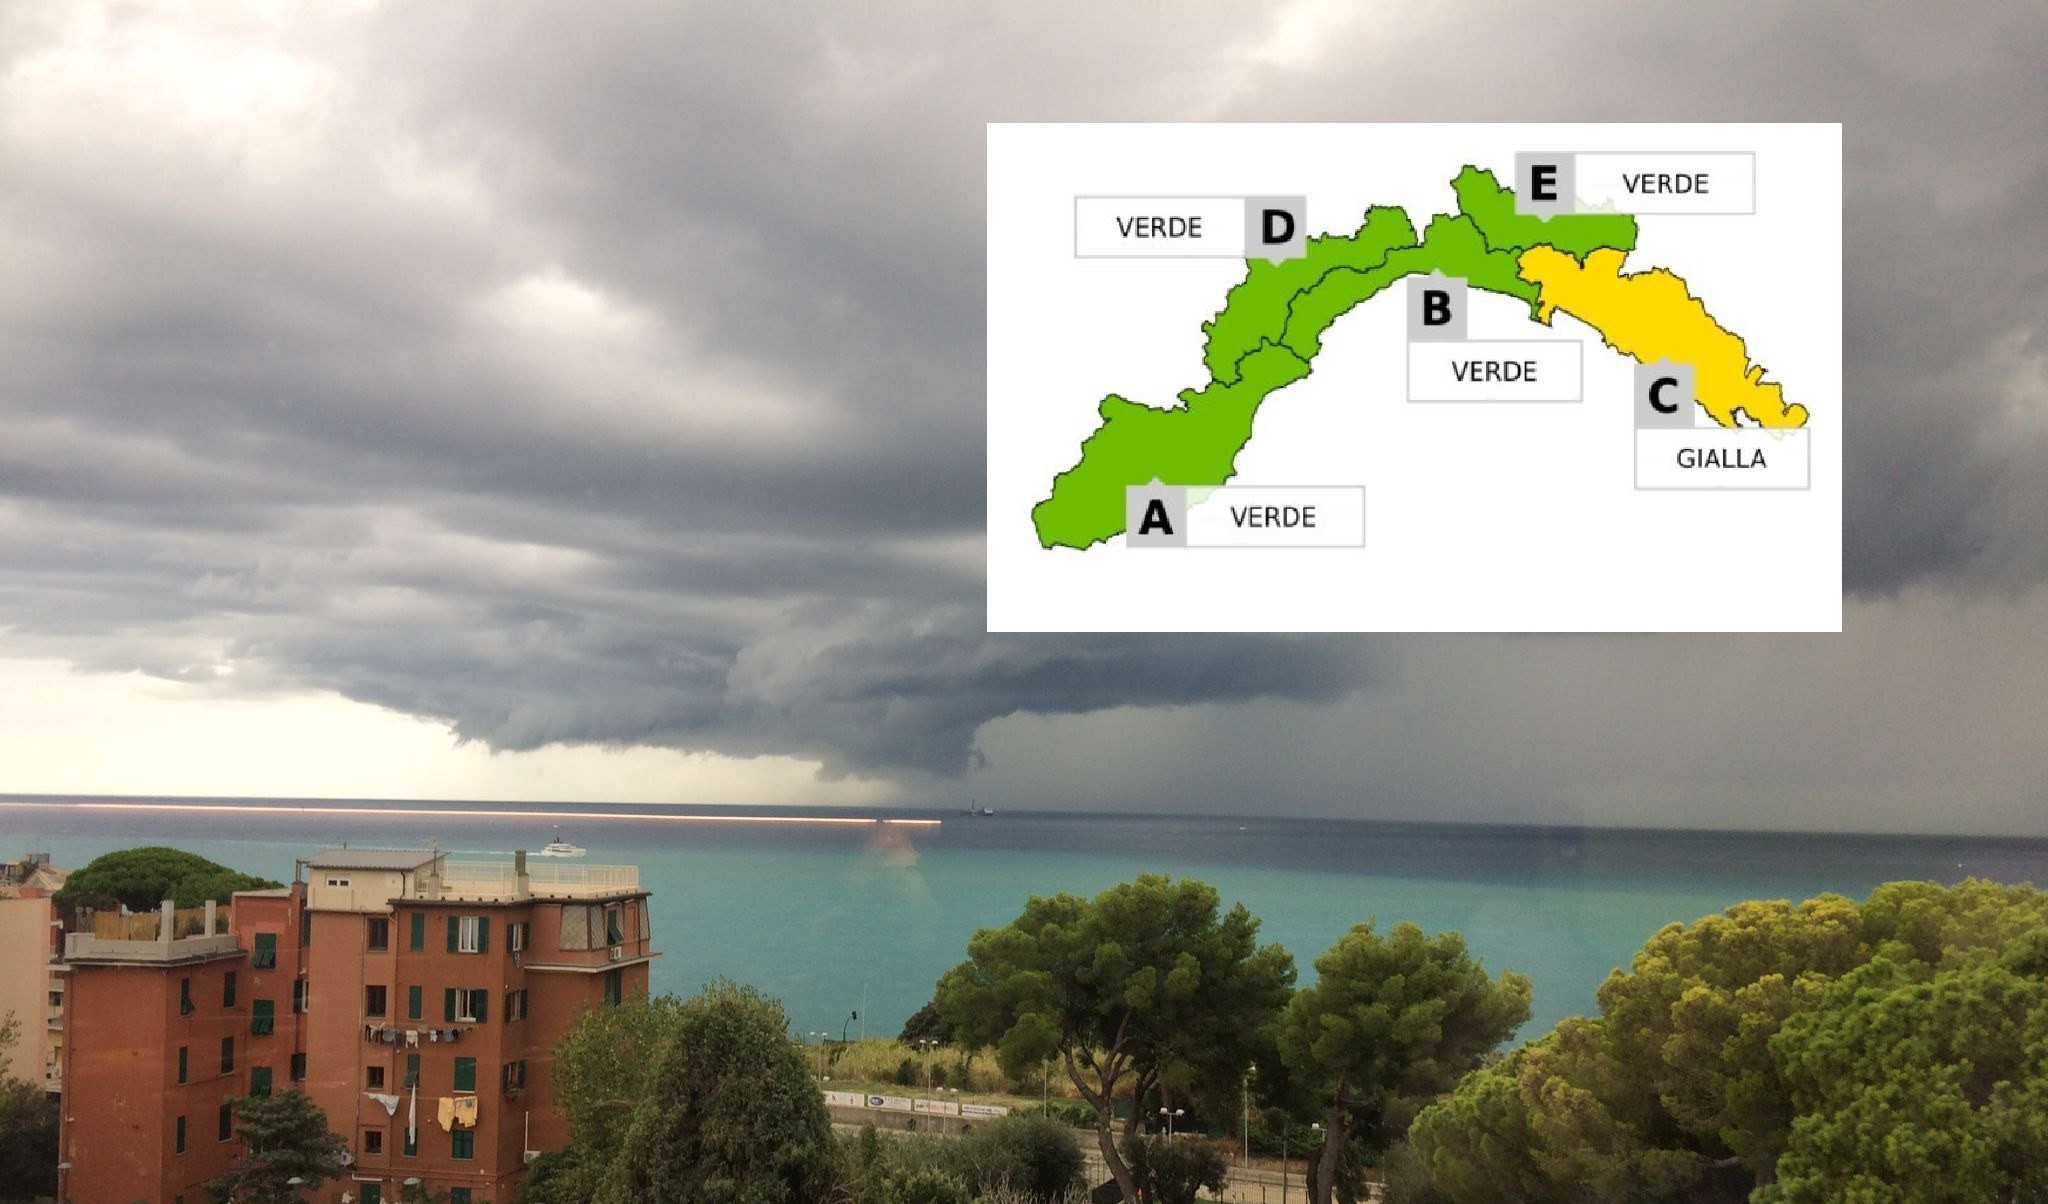 Pioggia, freddo e vento: il 5 gennaio allerta gialla sul Levante della Liguria